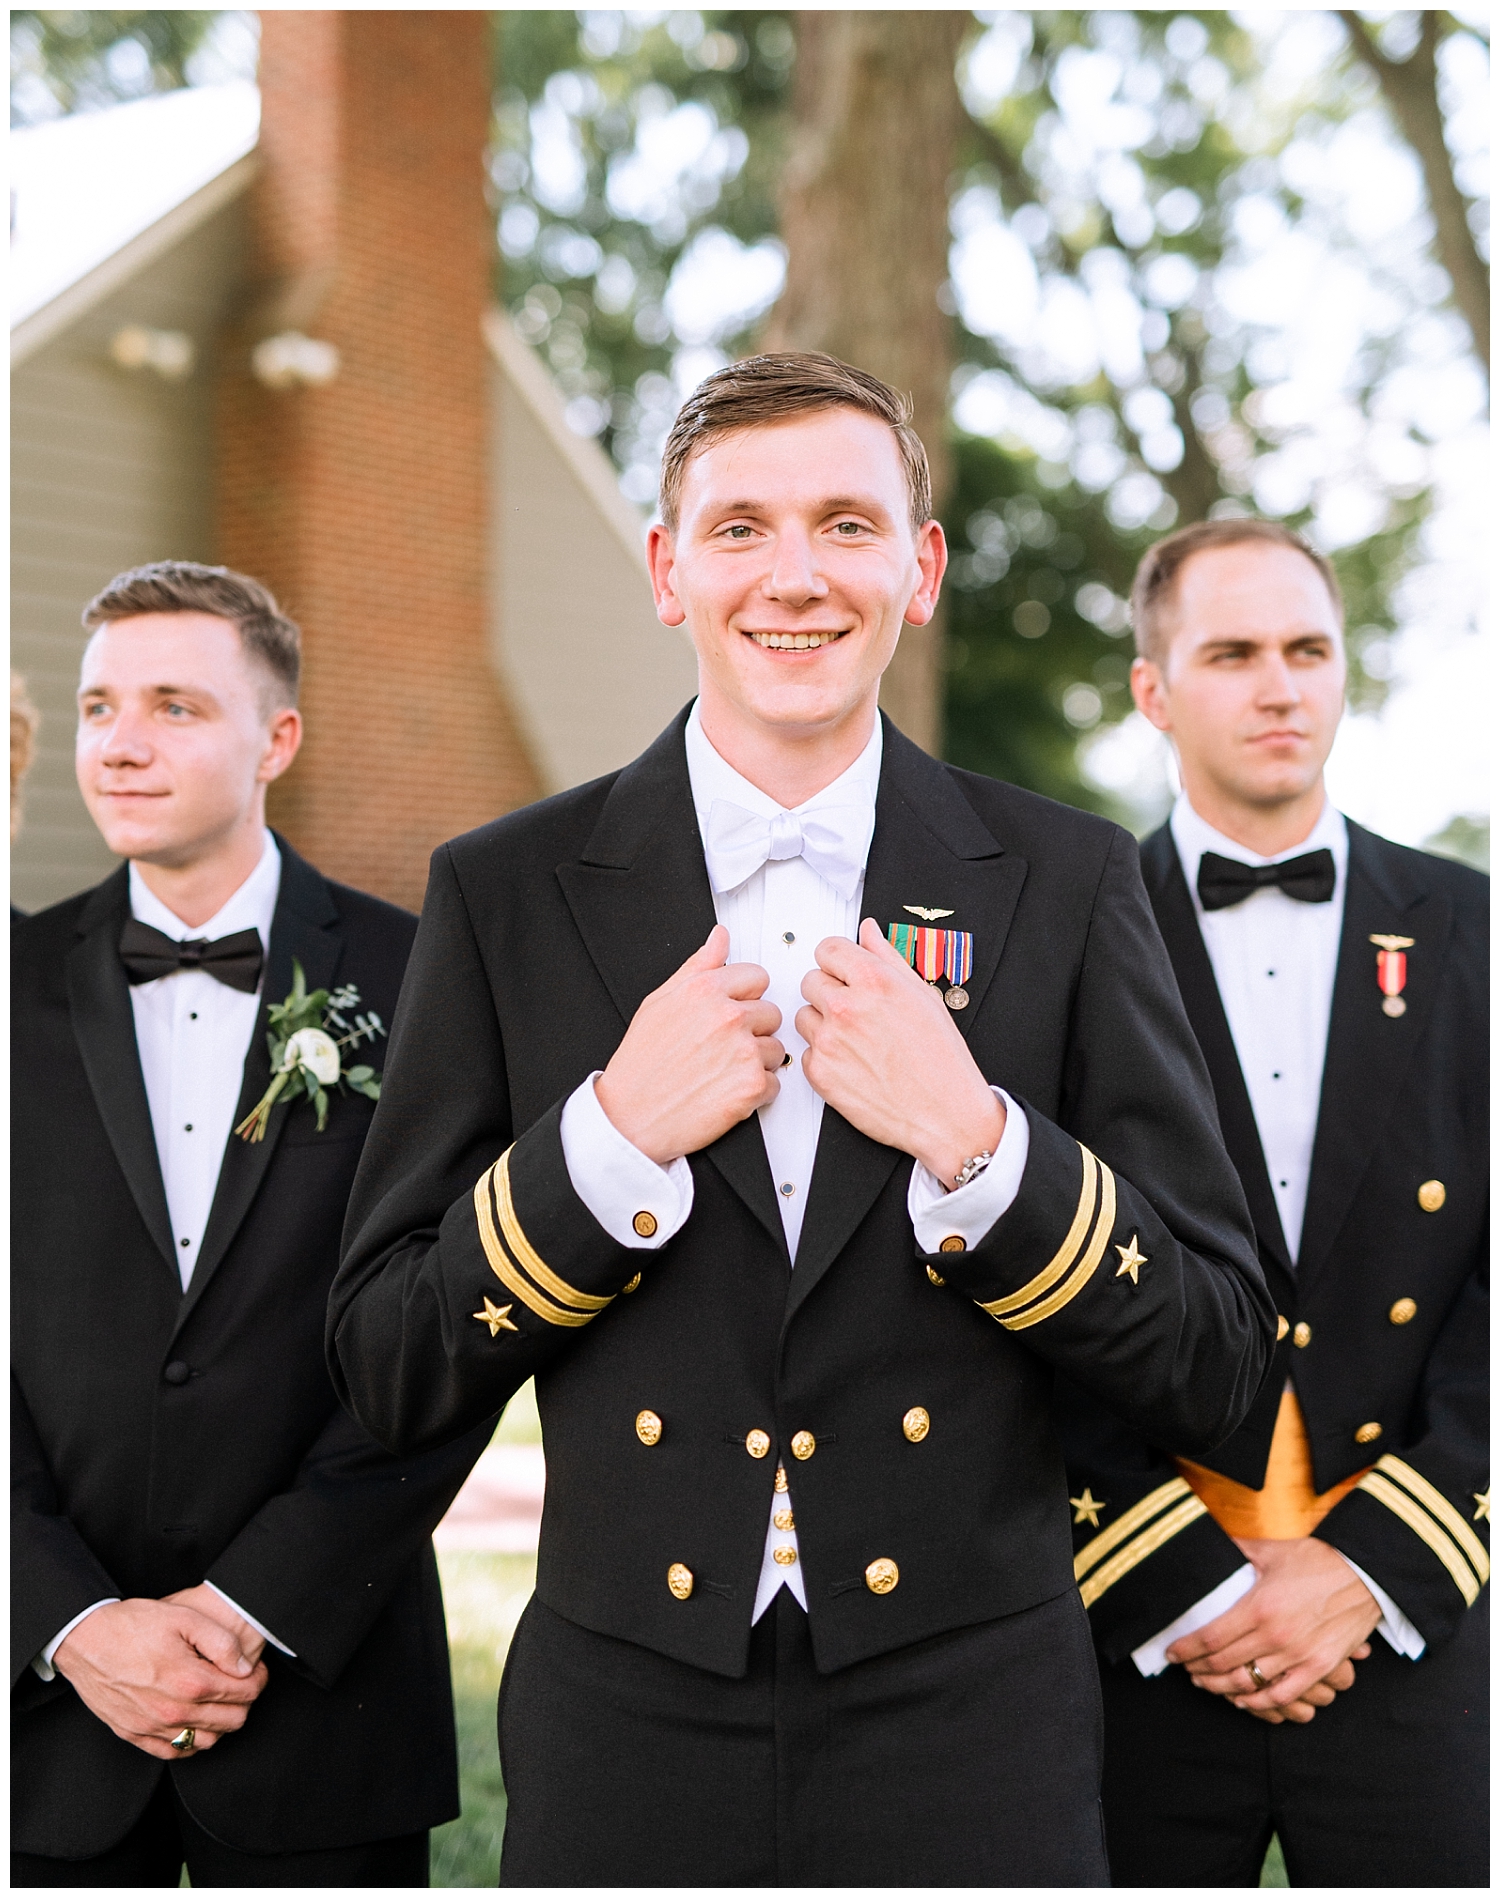 Military groom and groomsmen at Fleetwood Farm Winery wedding in Leesburg, Virginia